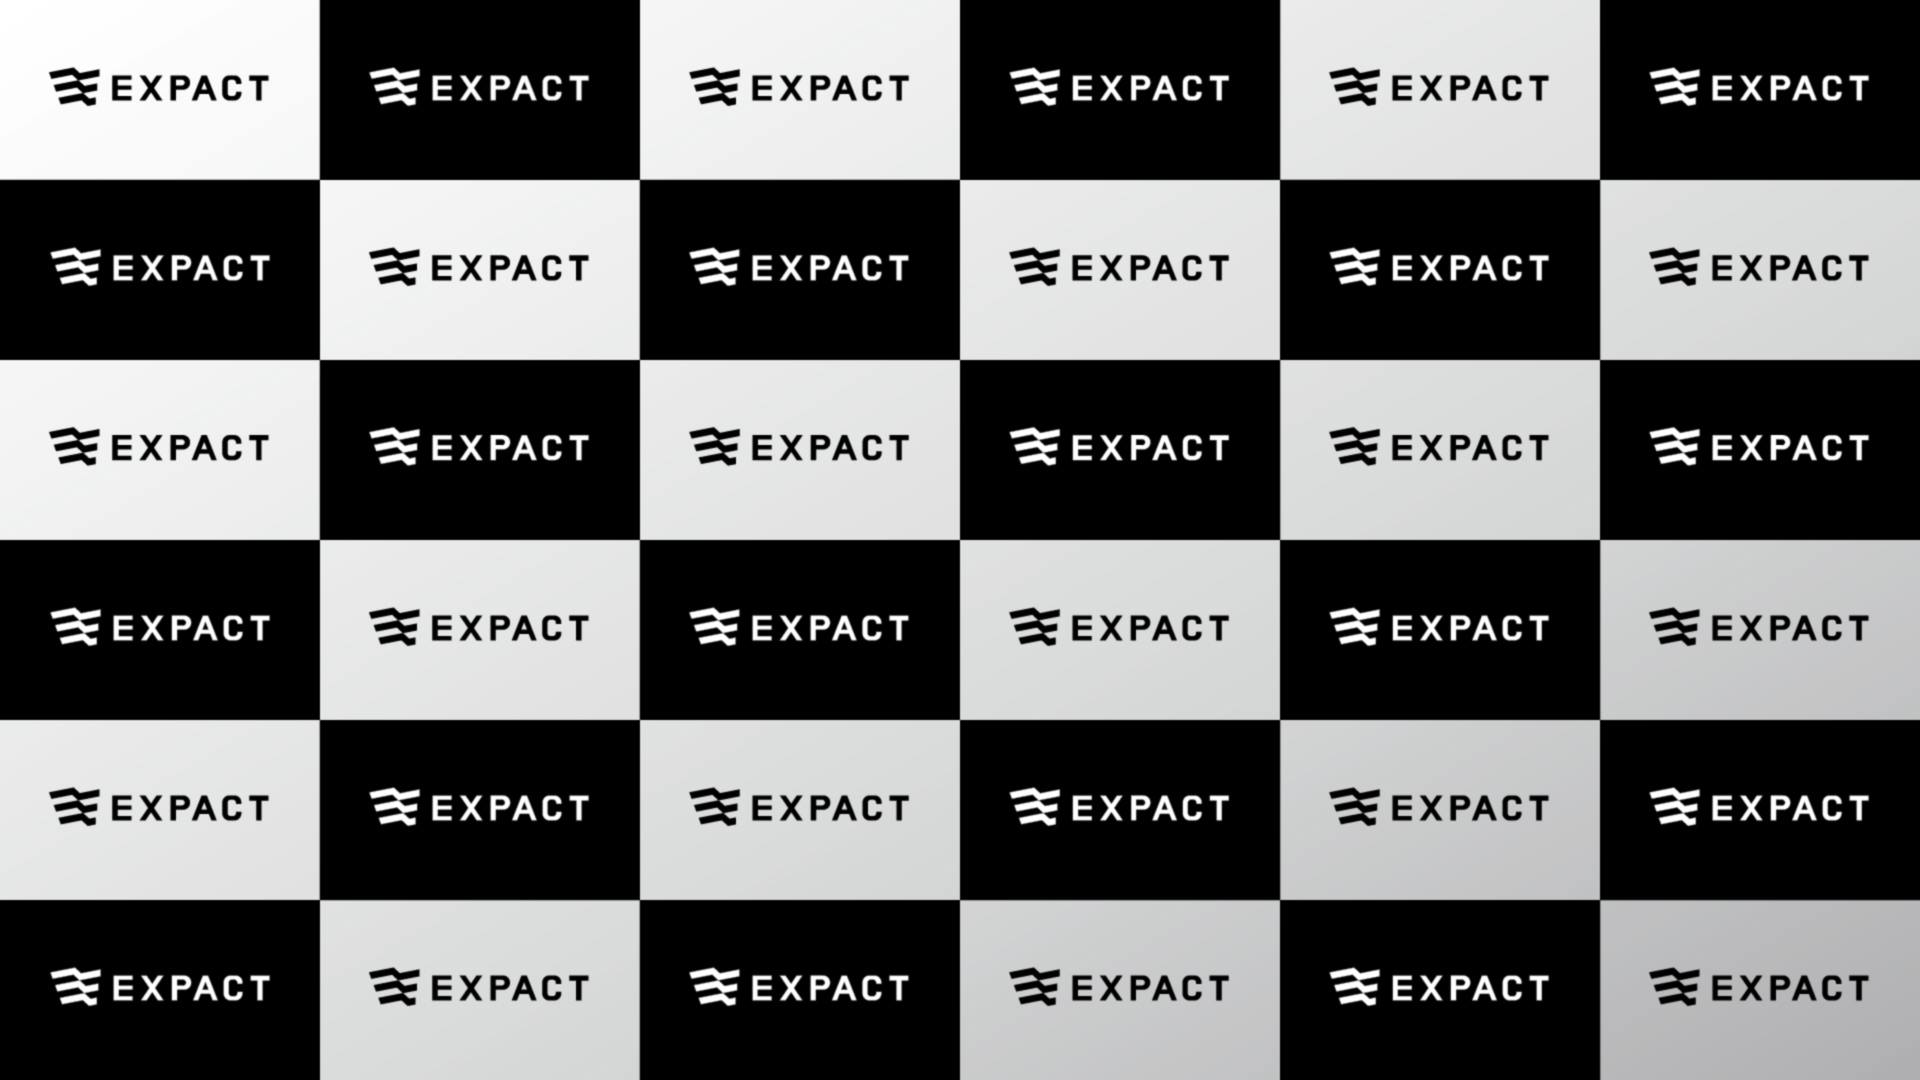  | EXPACT｜スタートアップの新たな挑戦をサポート